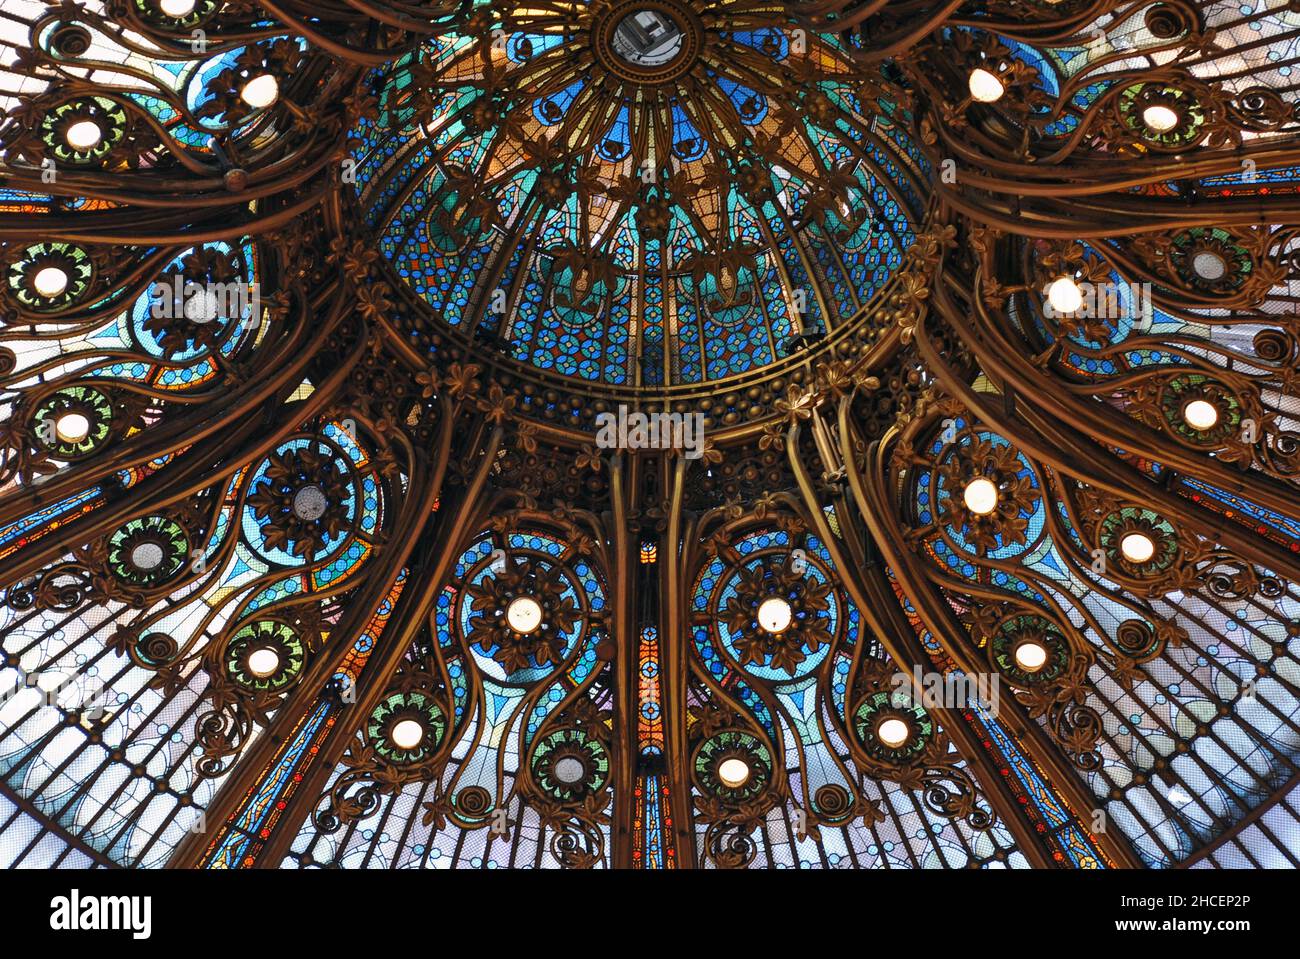 Dettaglio della cupola in vetro colorato in stile art nouveau nel grande magazzino Galeries Lafayette di Parigi. La cupola fu costruita nel 1912. Foto Stock